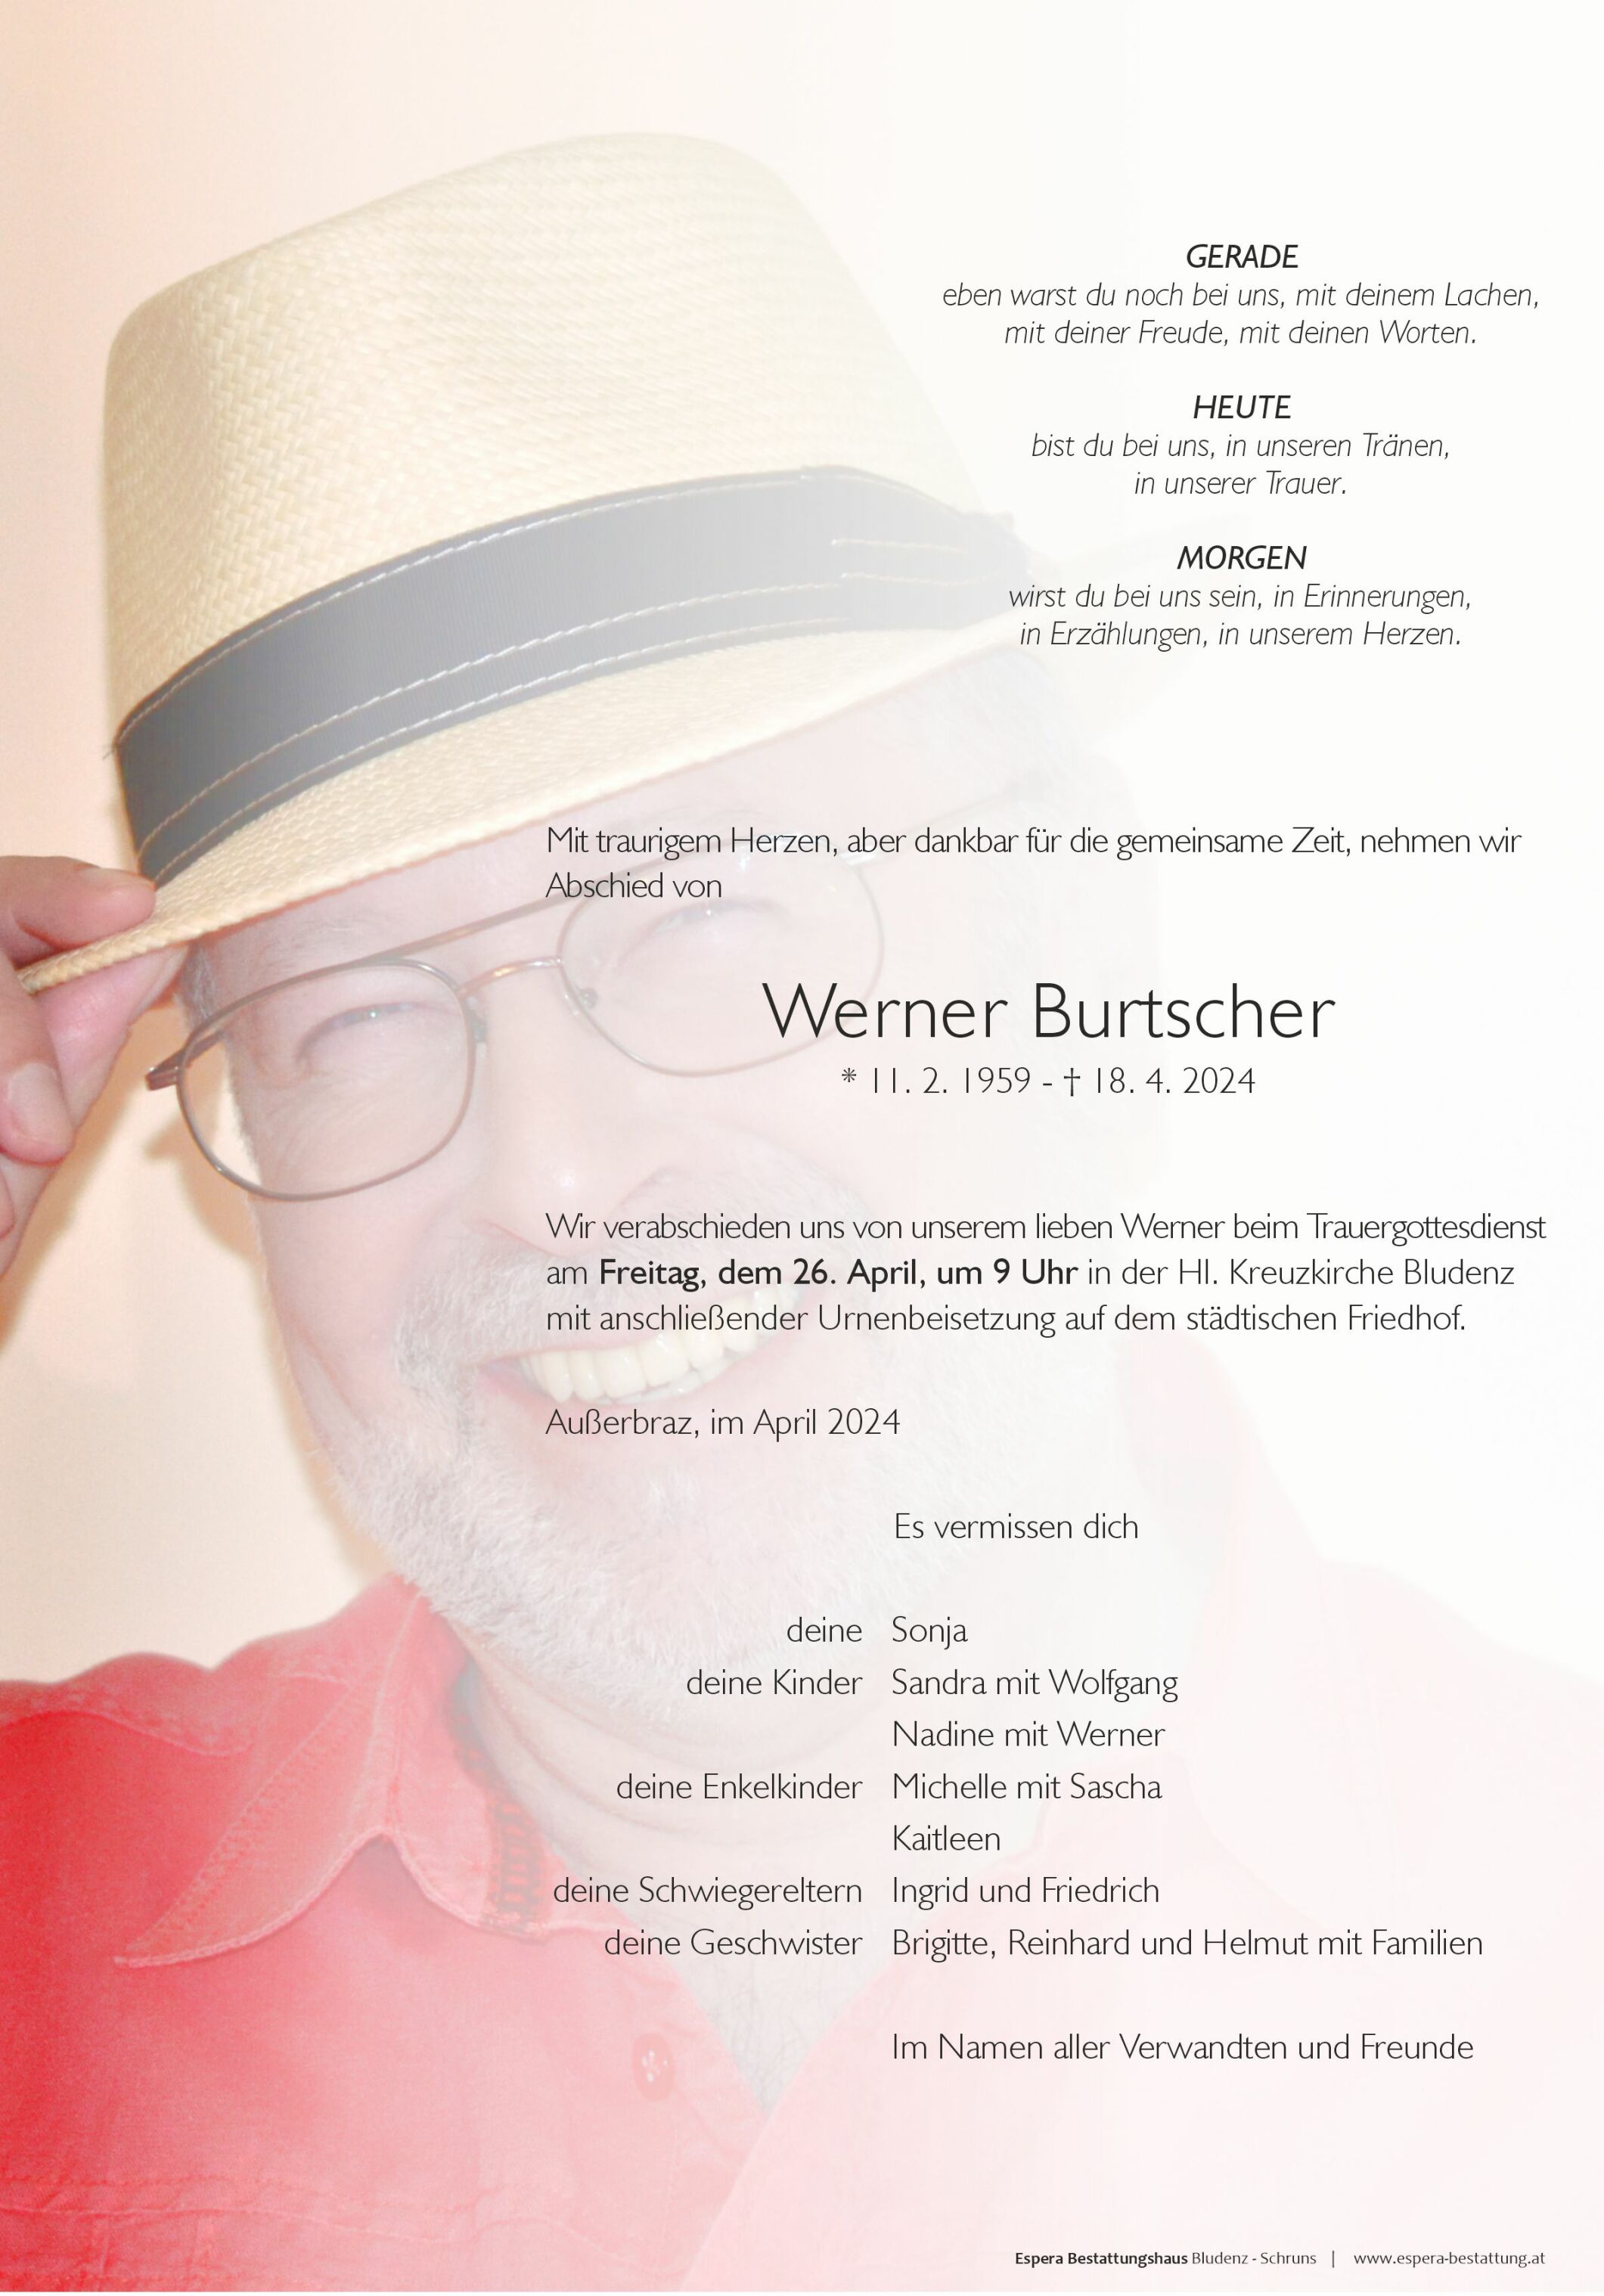 Werner Burtscher